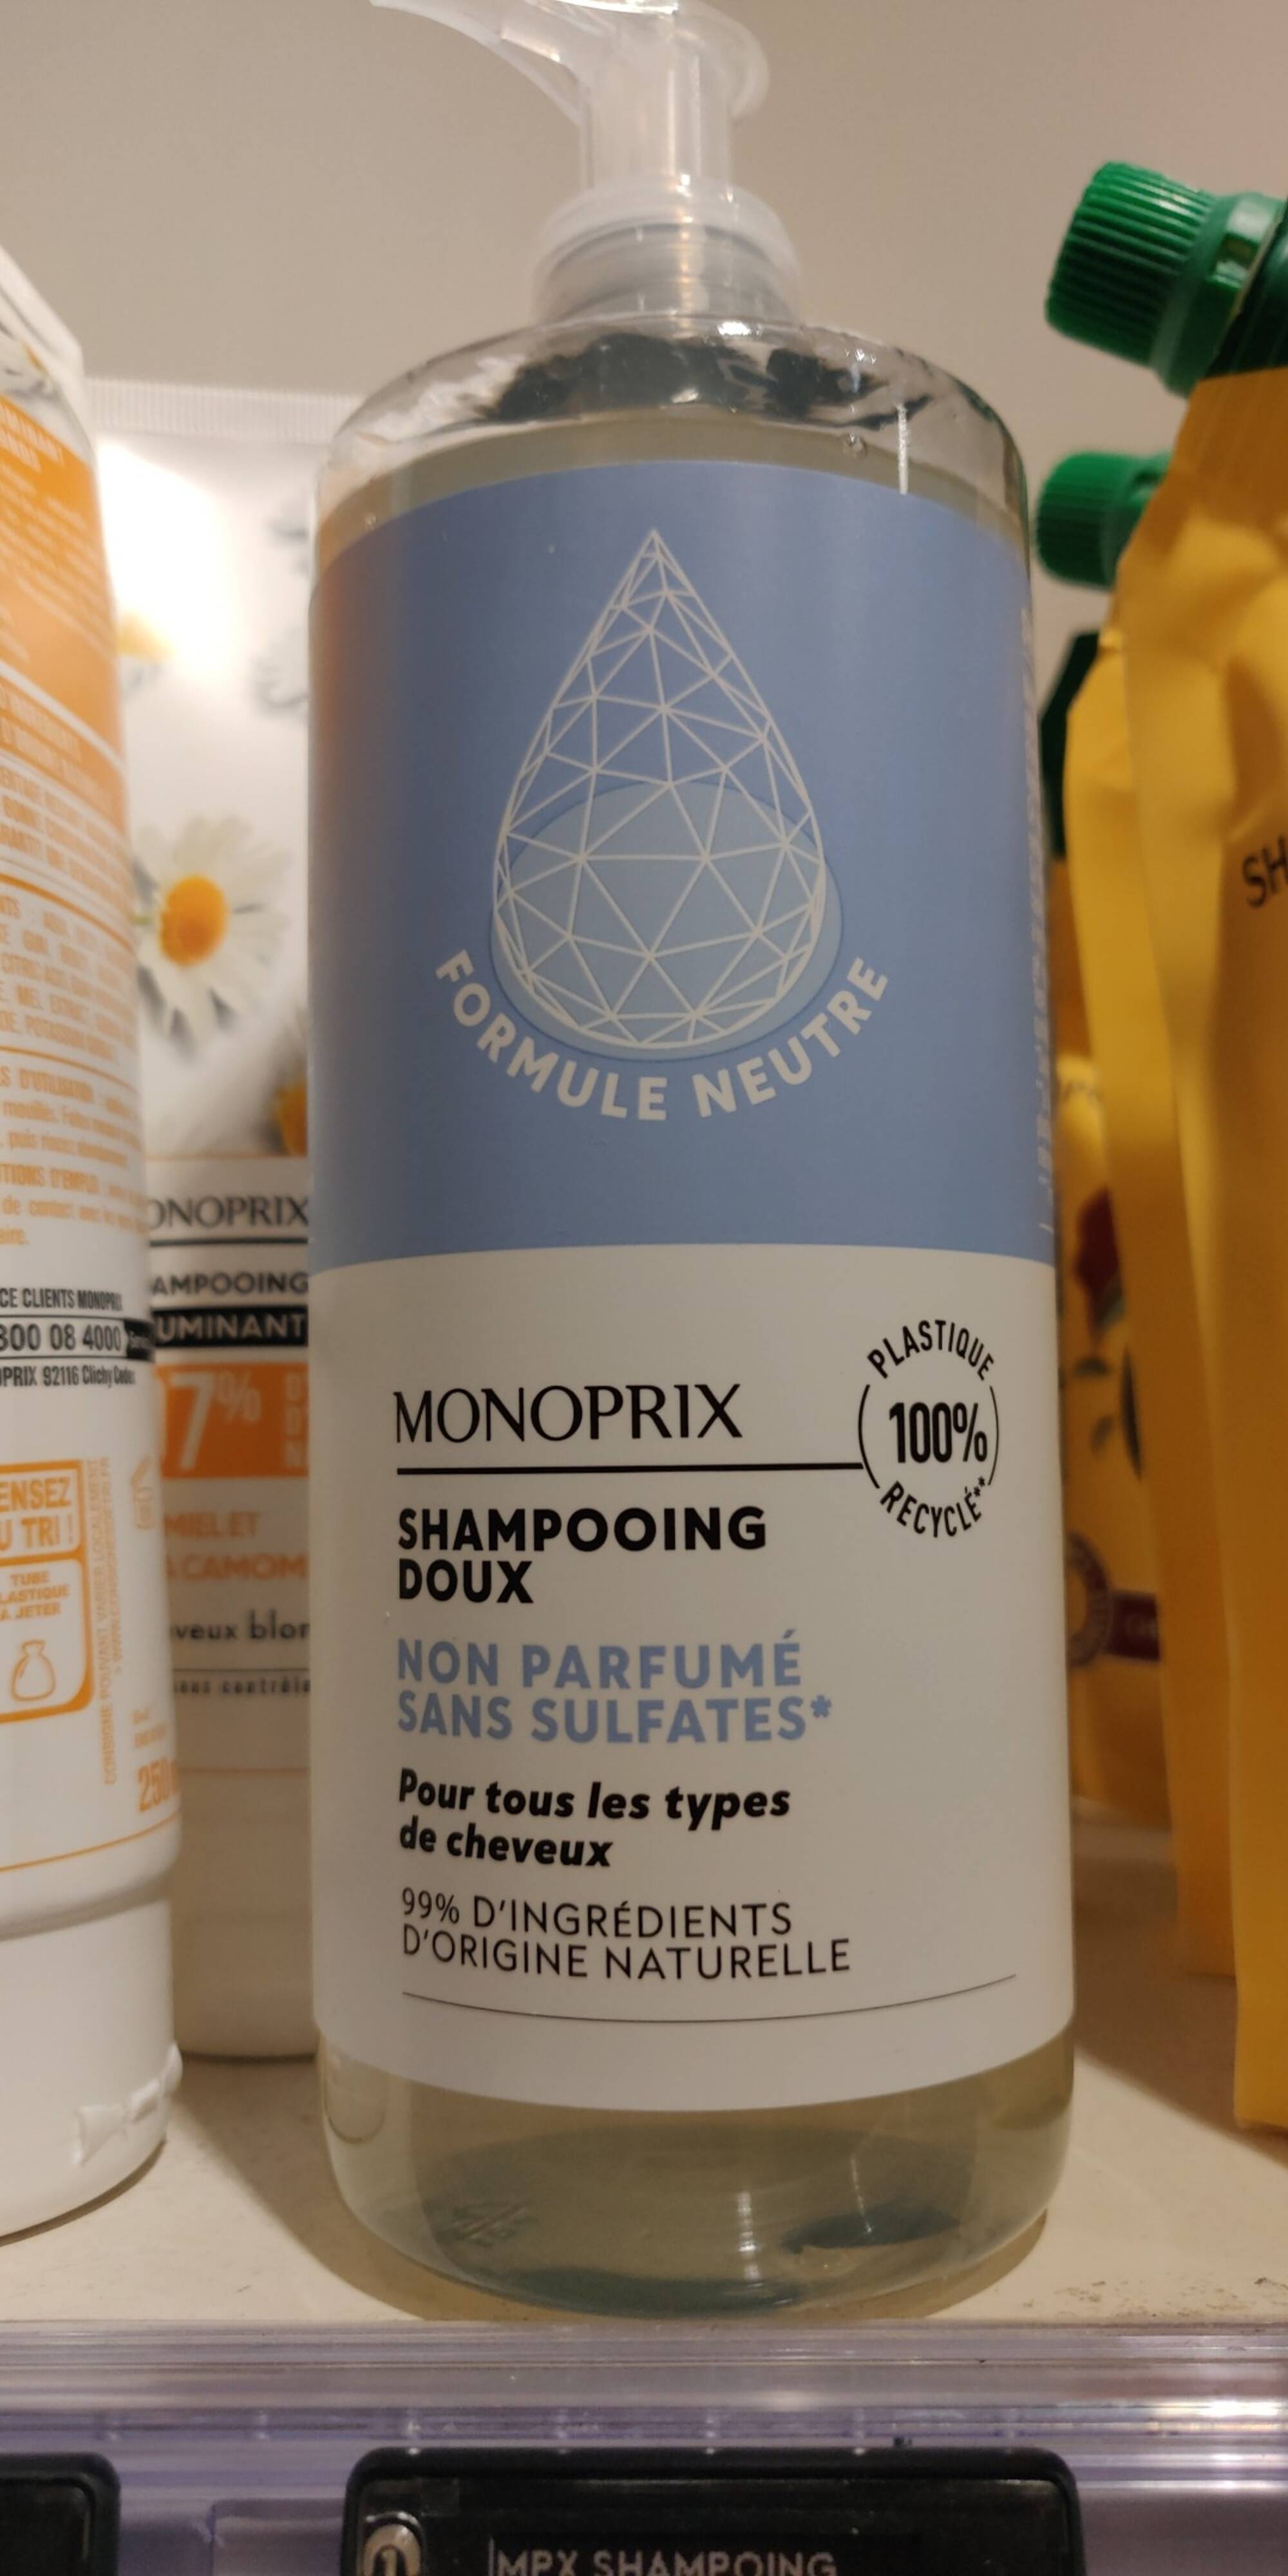 MONOPRIX - Shampooing doux non parfumé